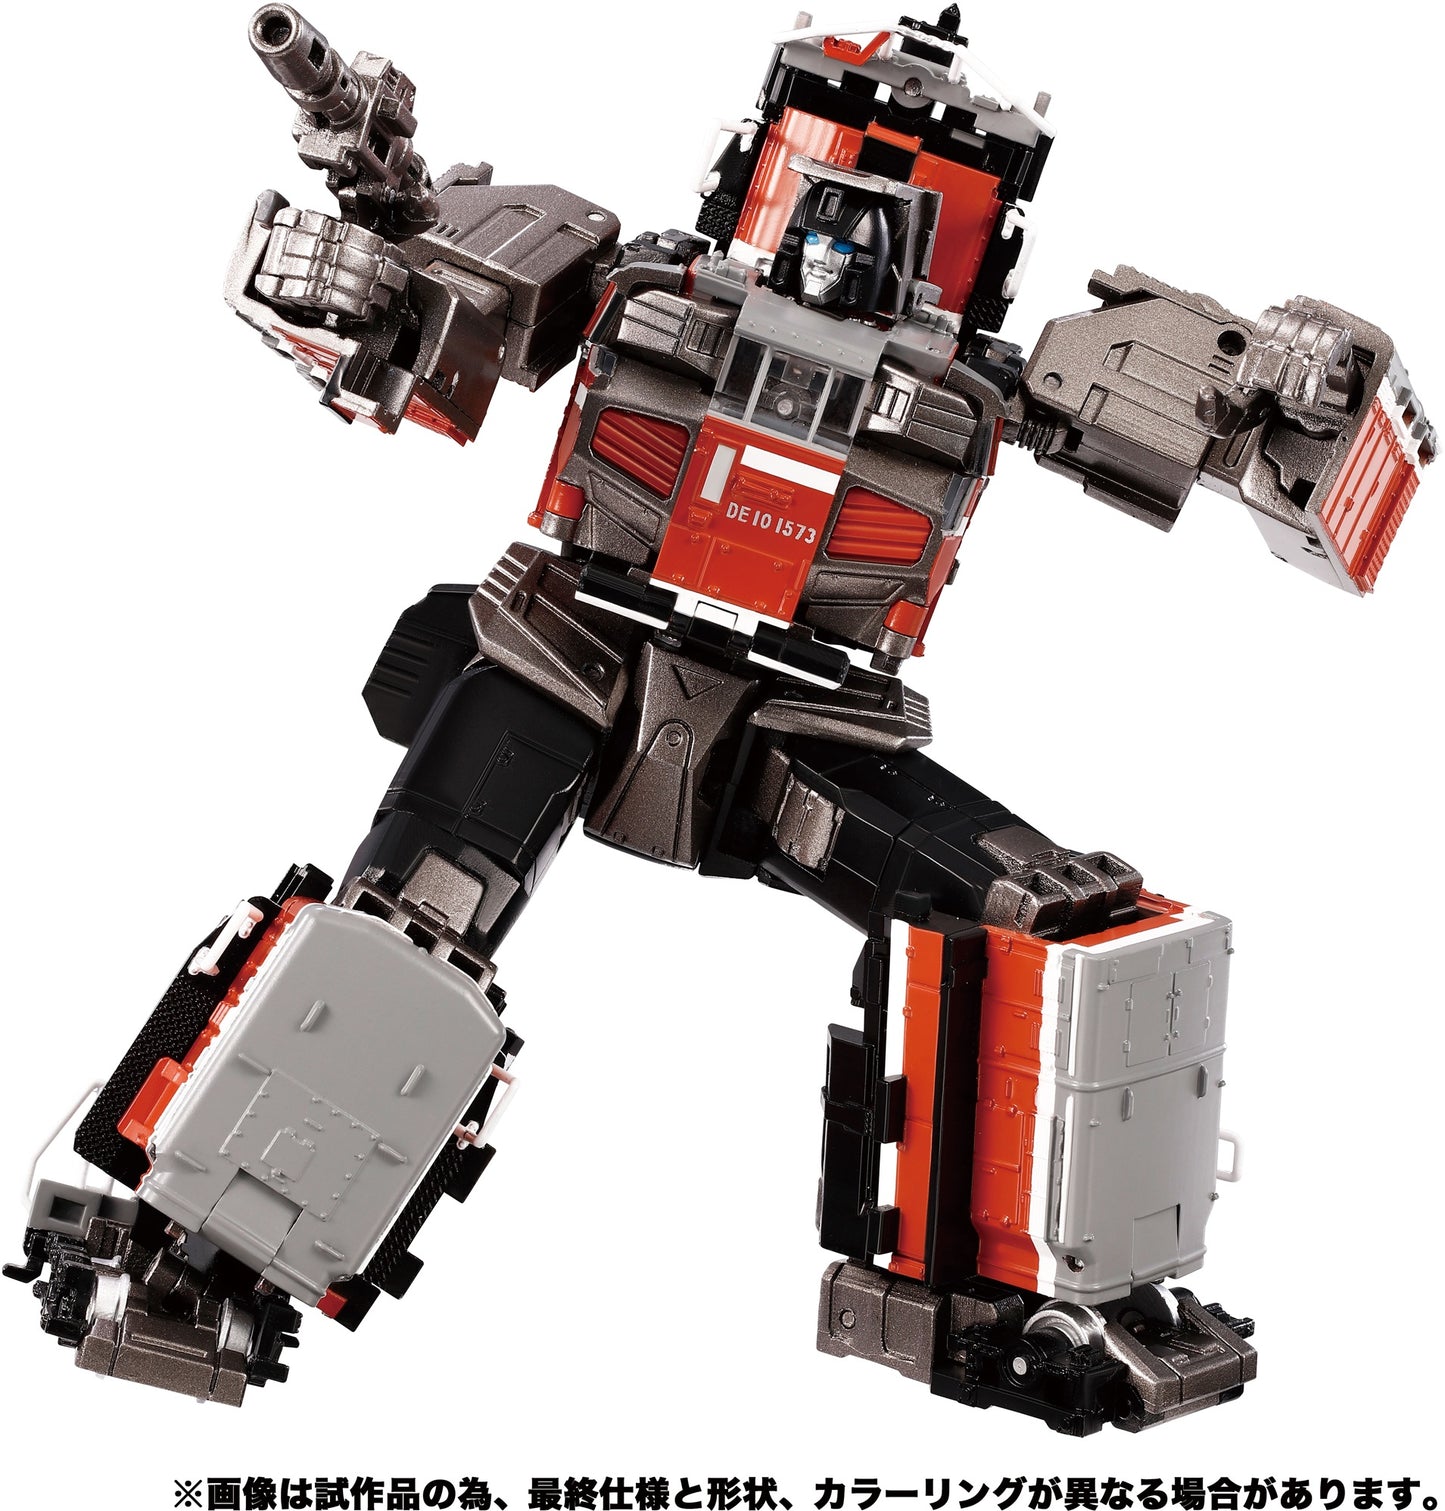 [PRE-ORDER] Transformers Masterpiece MPG-06 Trainbot Kaen